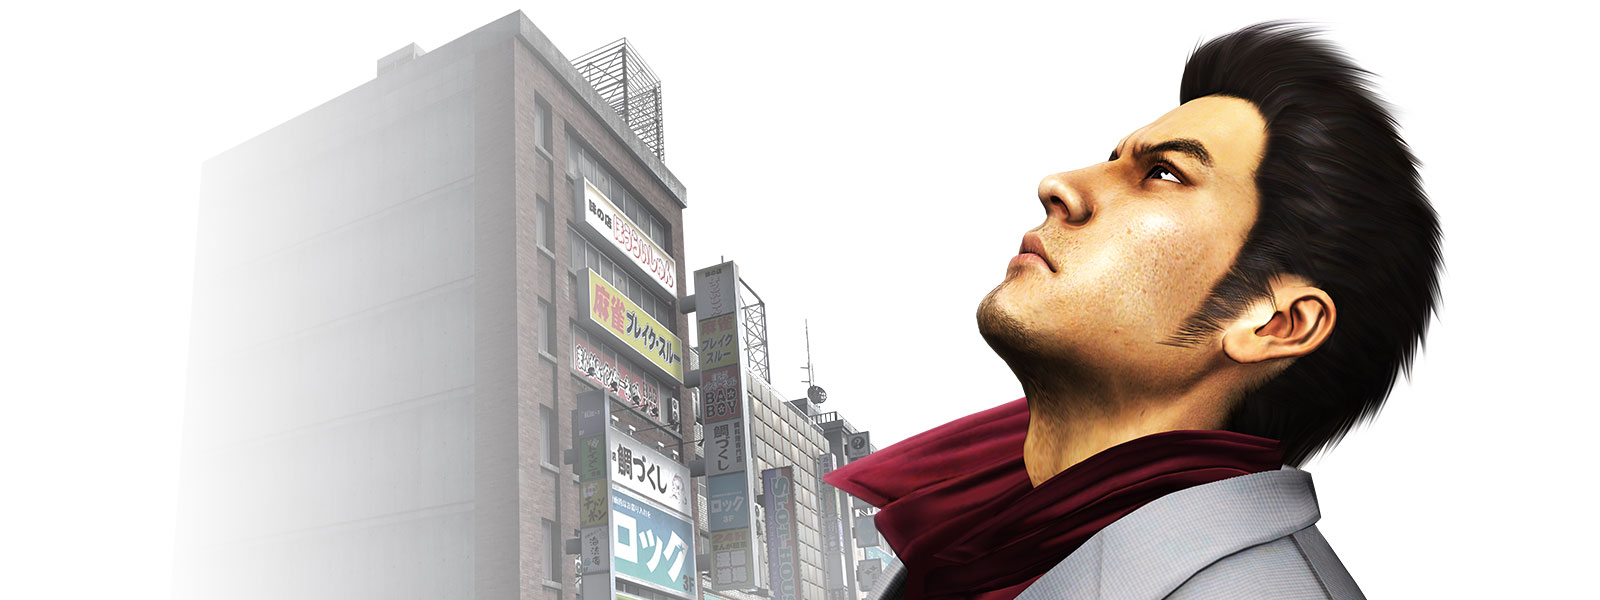 Kazuma Kiryu betrachtet den Himmel über einer Stadt im Hintergrund